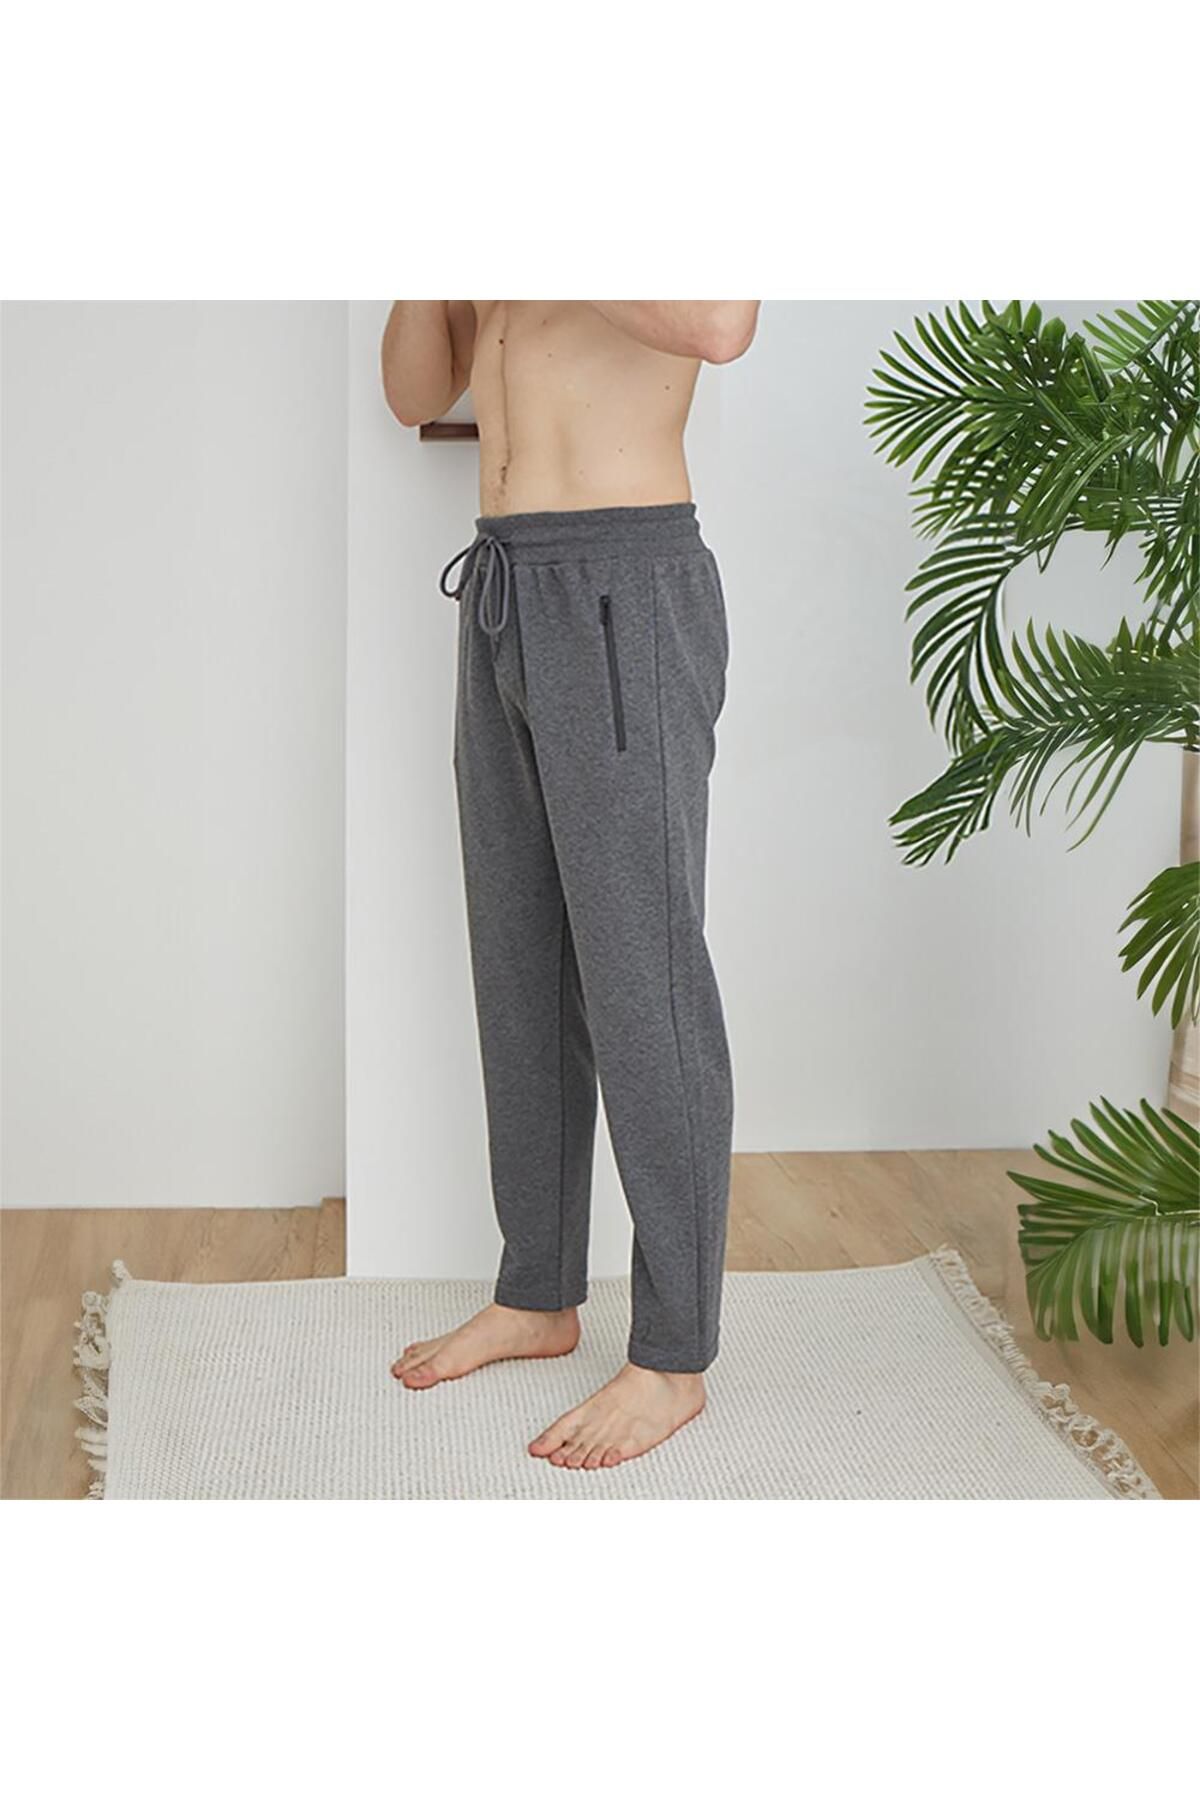 KLY 1038 Erkek Tek Alt Pijama Pantalon